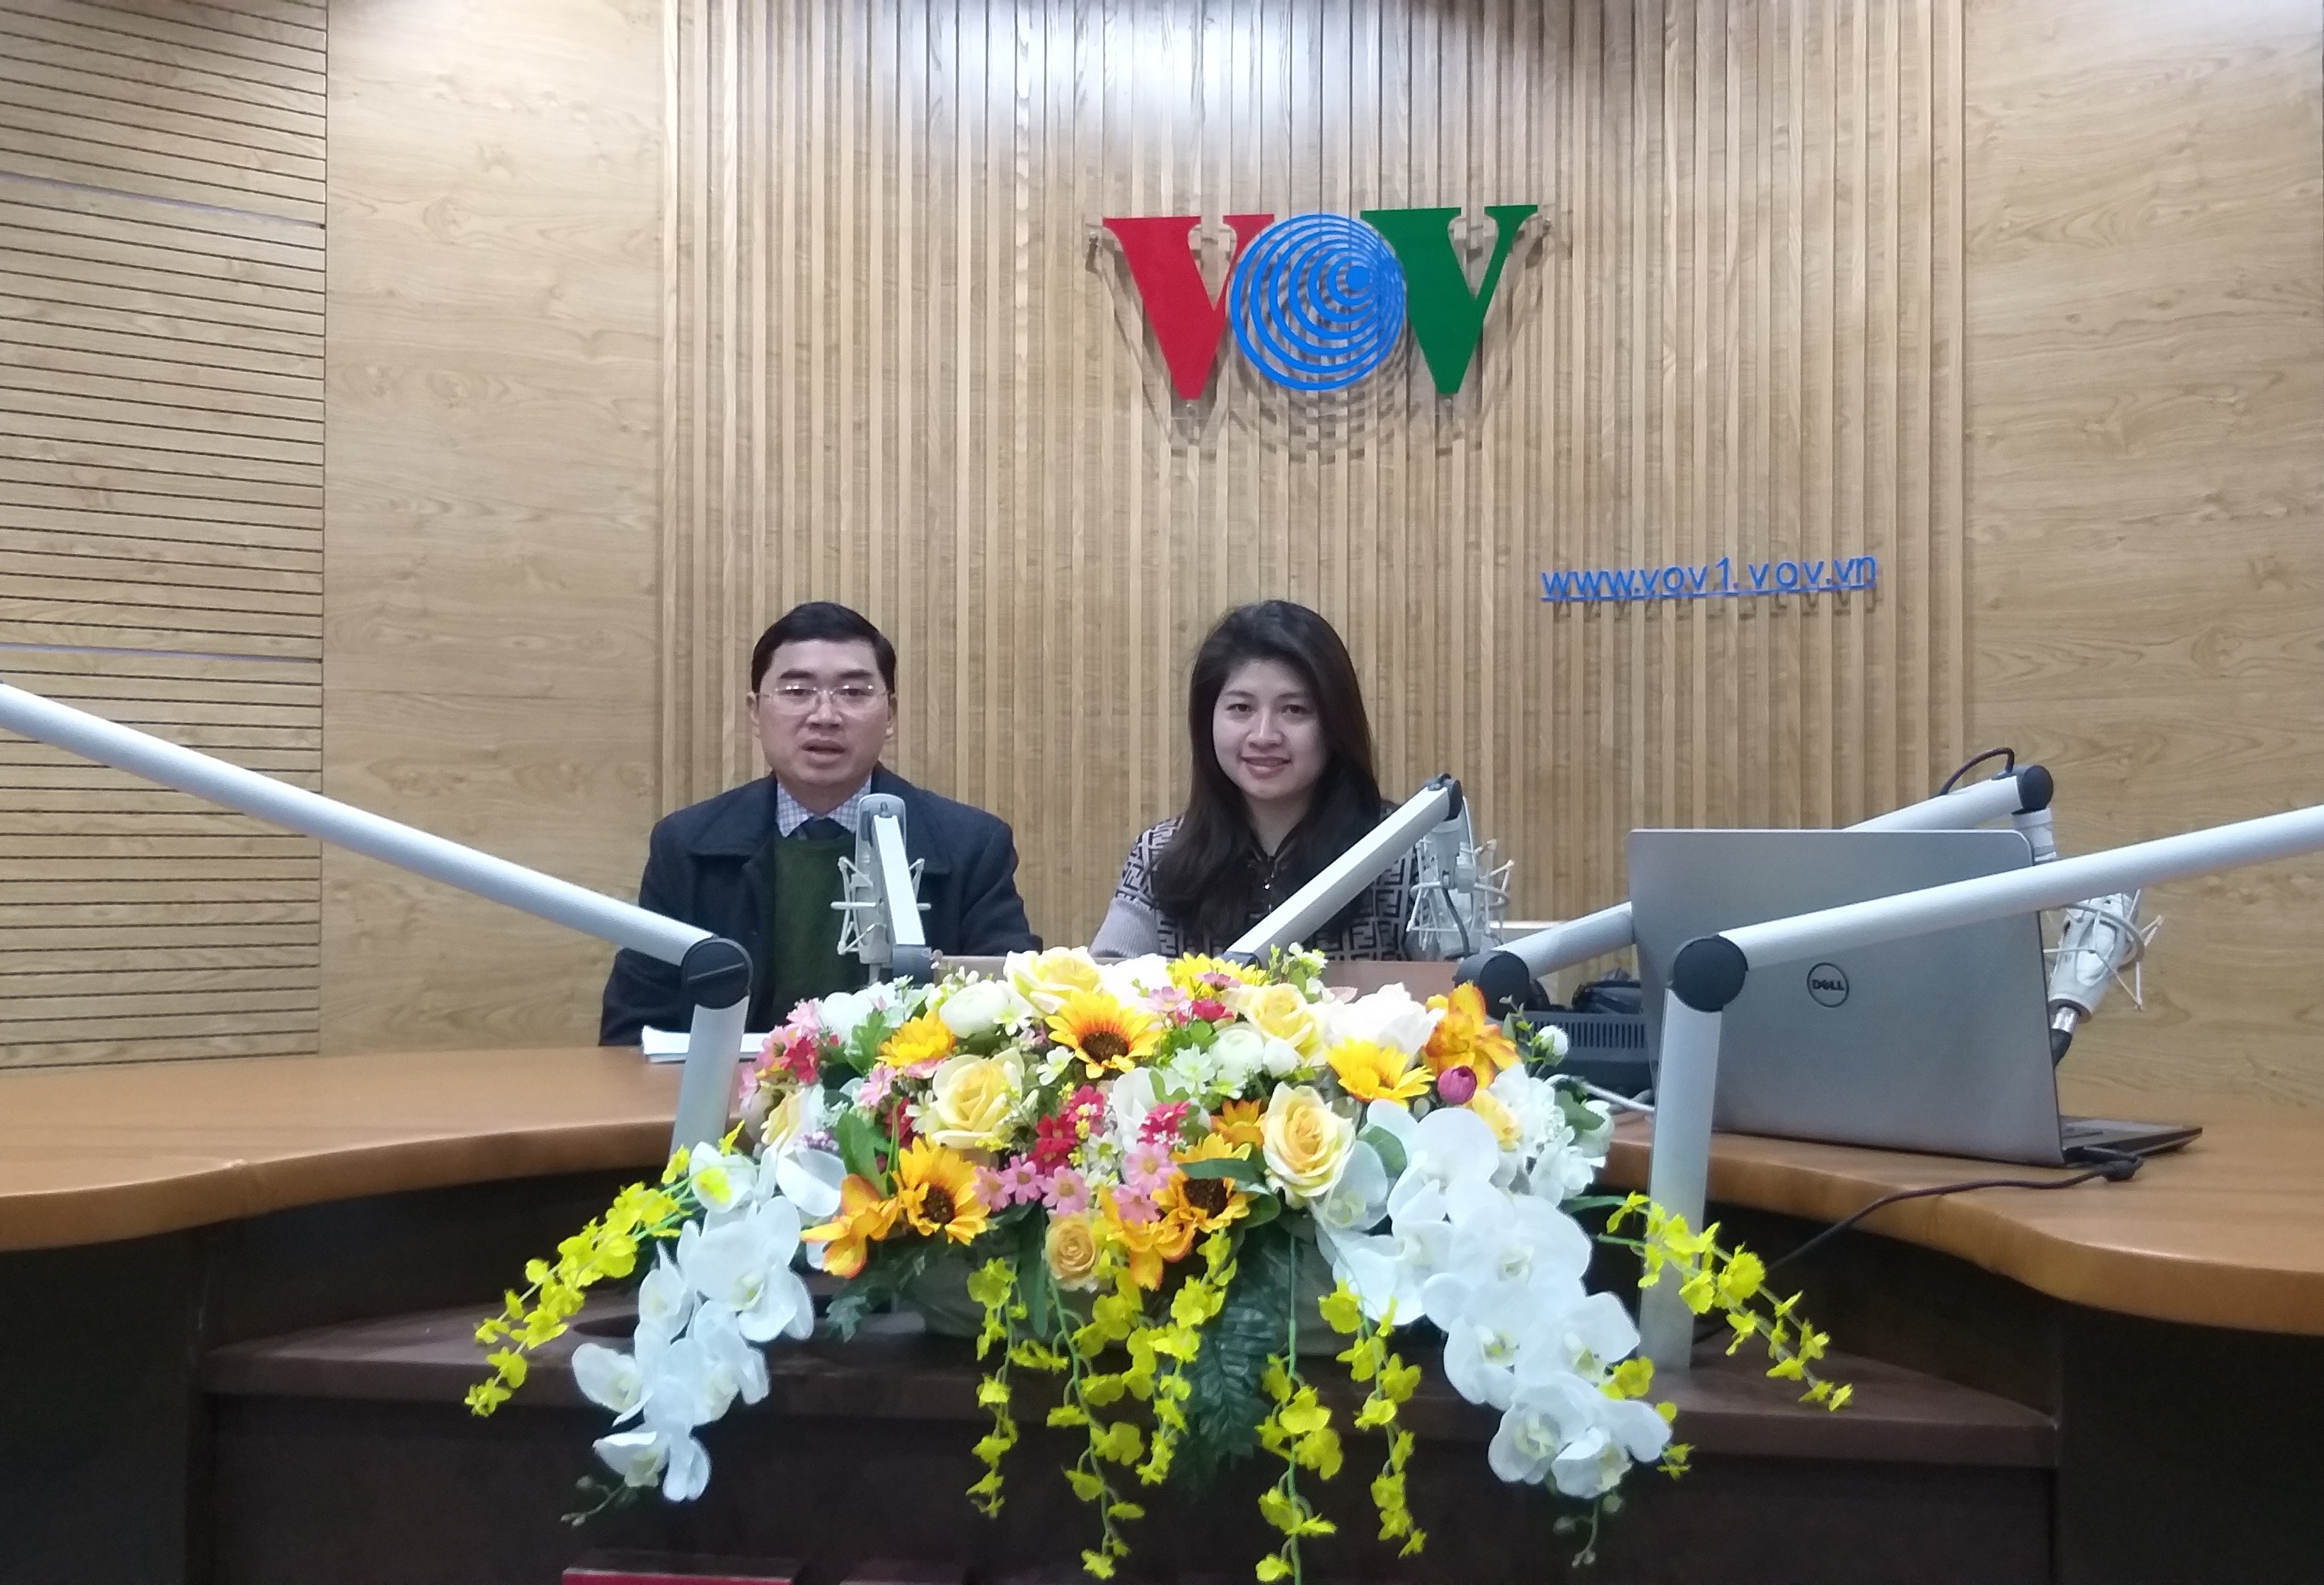 Luật sư Lê Ngọc Hà tư vấn trực tiếp trong Chương trình Vì an ninh tổ quốc phát trên VOV1